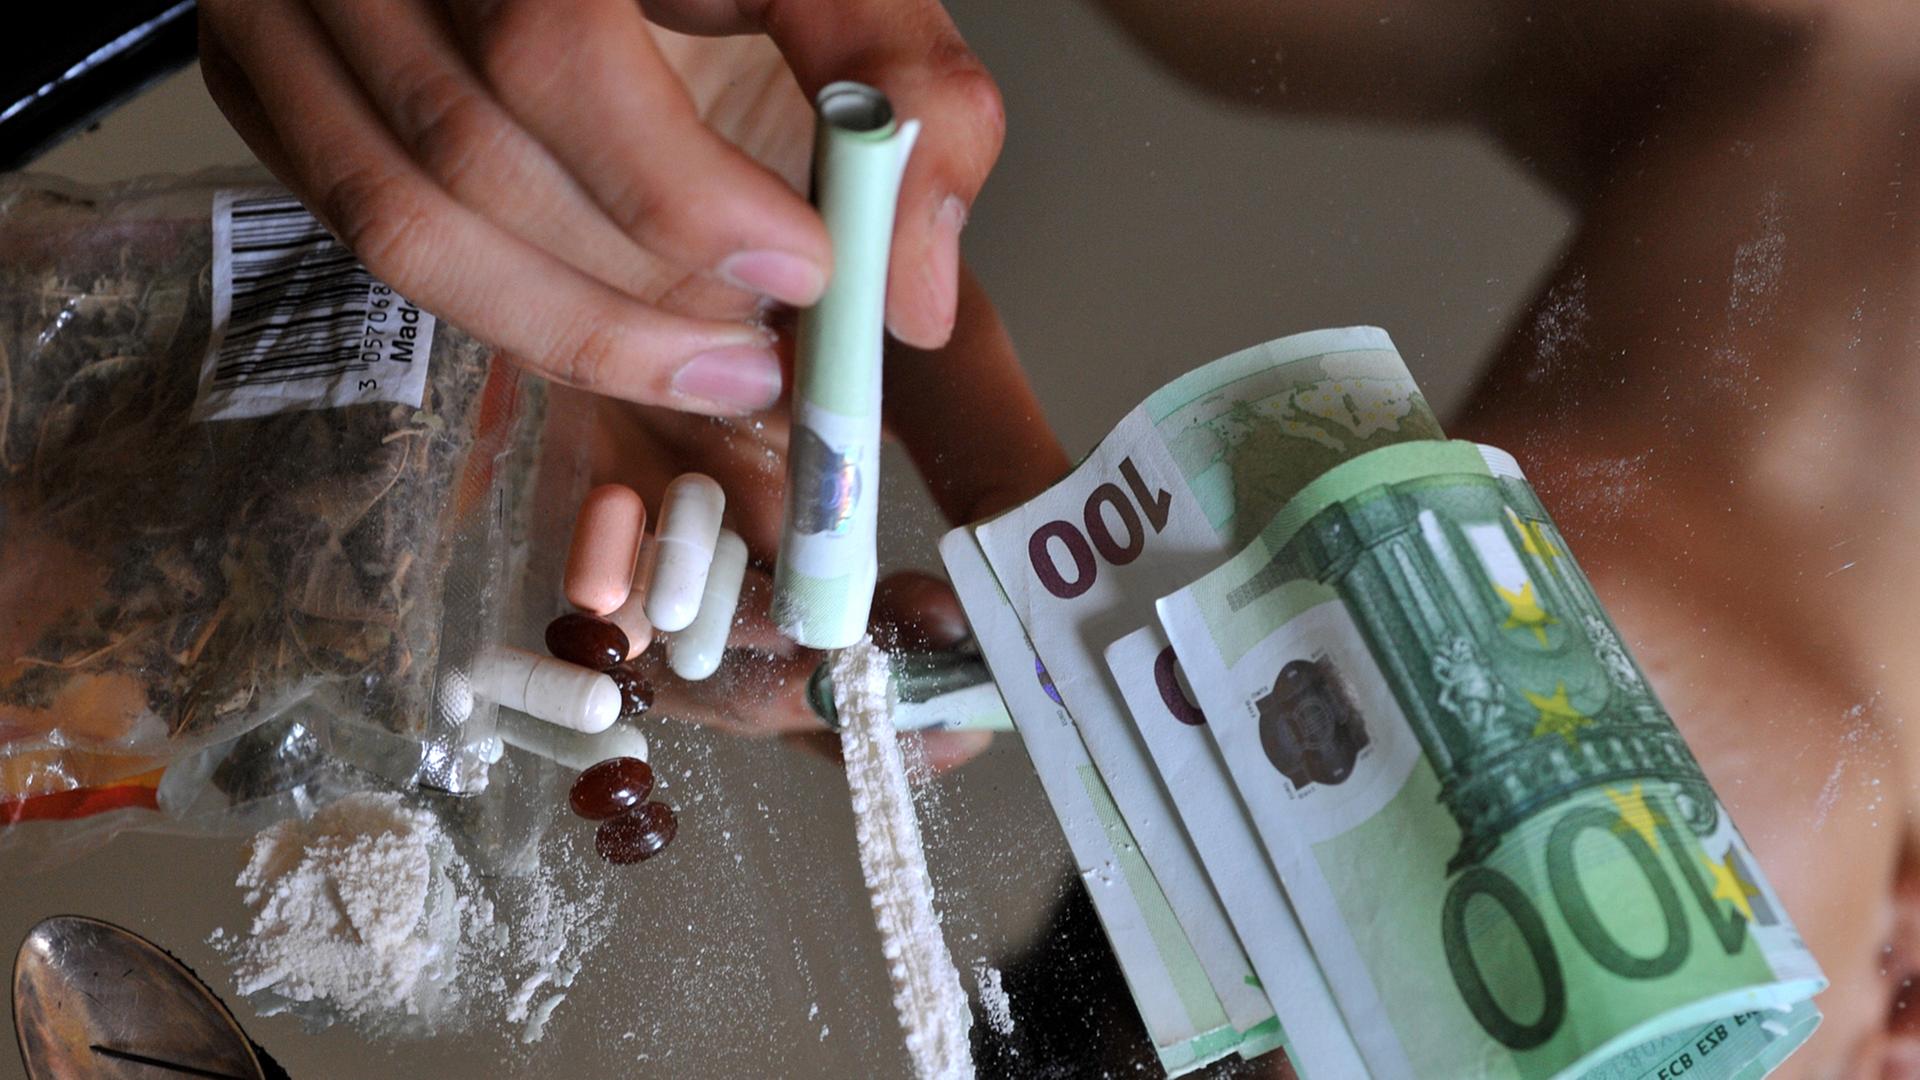 Jahresbericht - Wieder mehr Drogentote in Deutschland